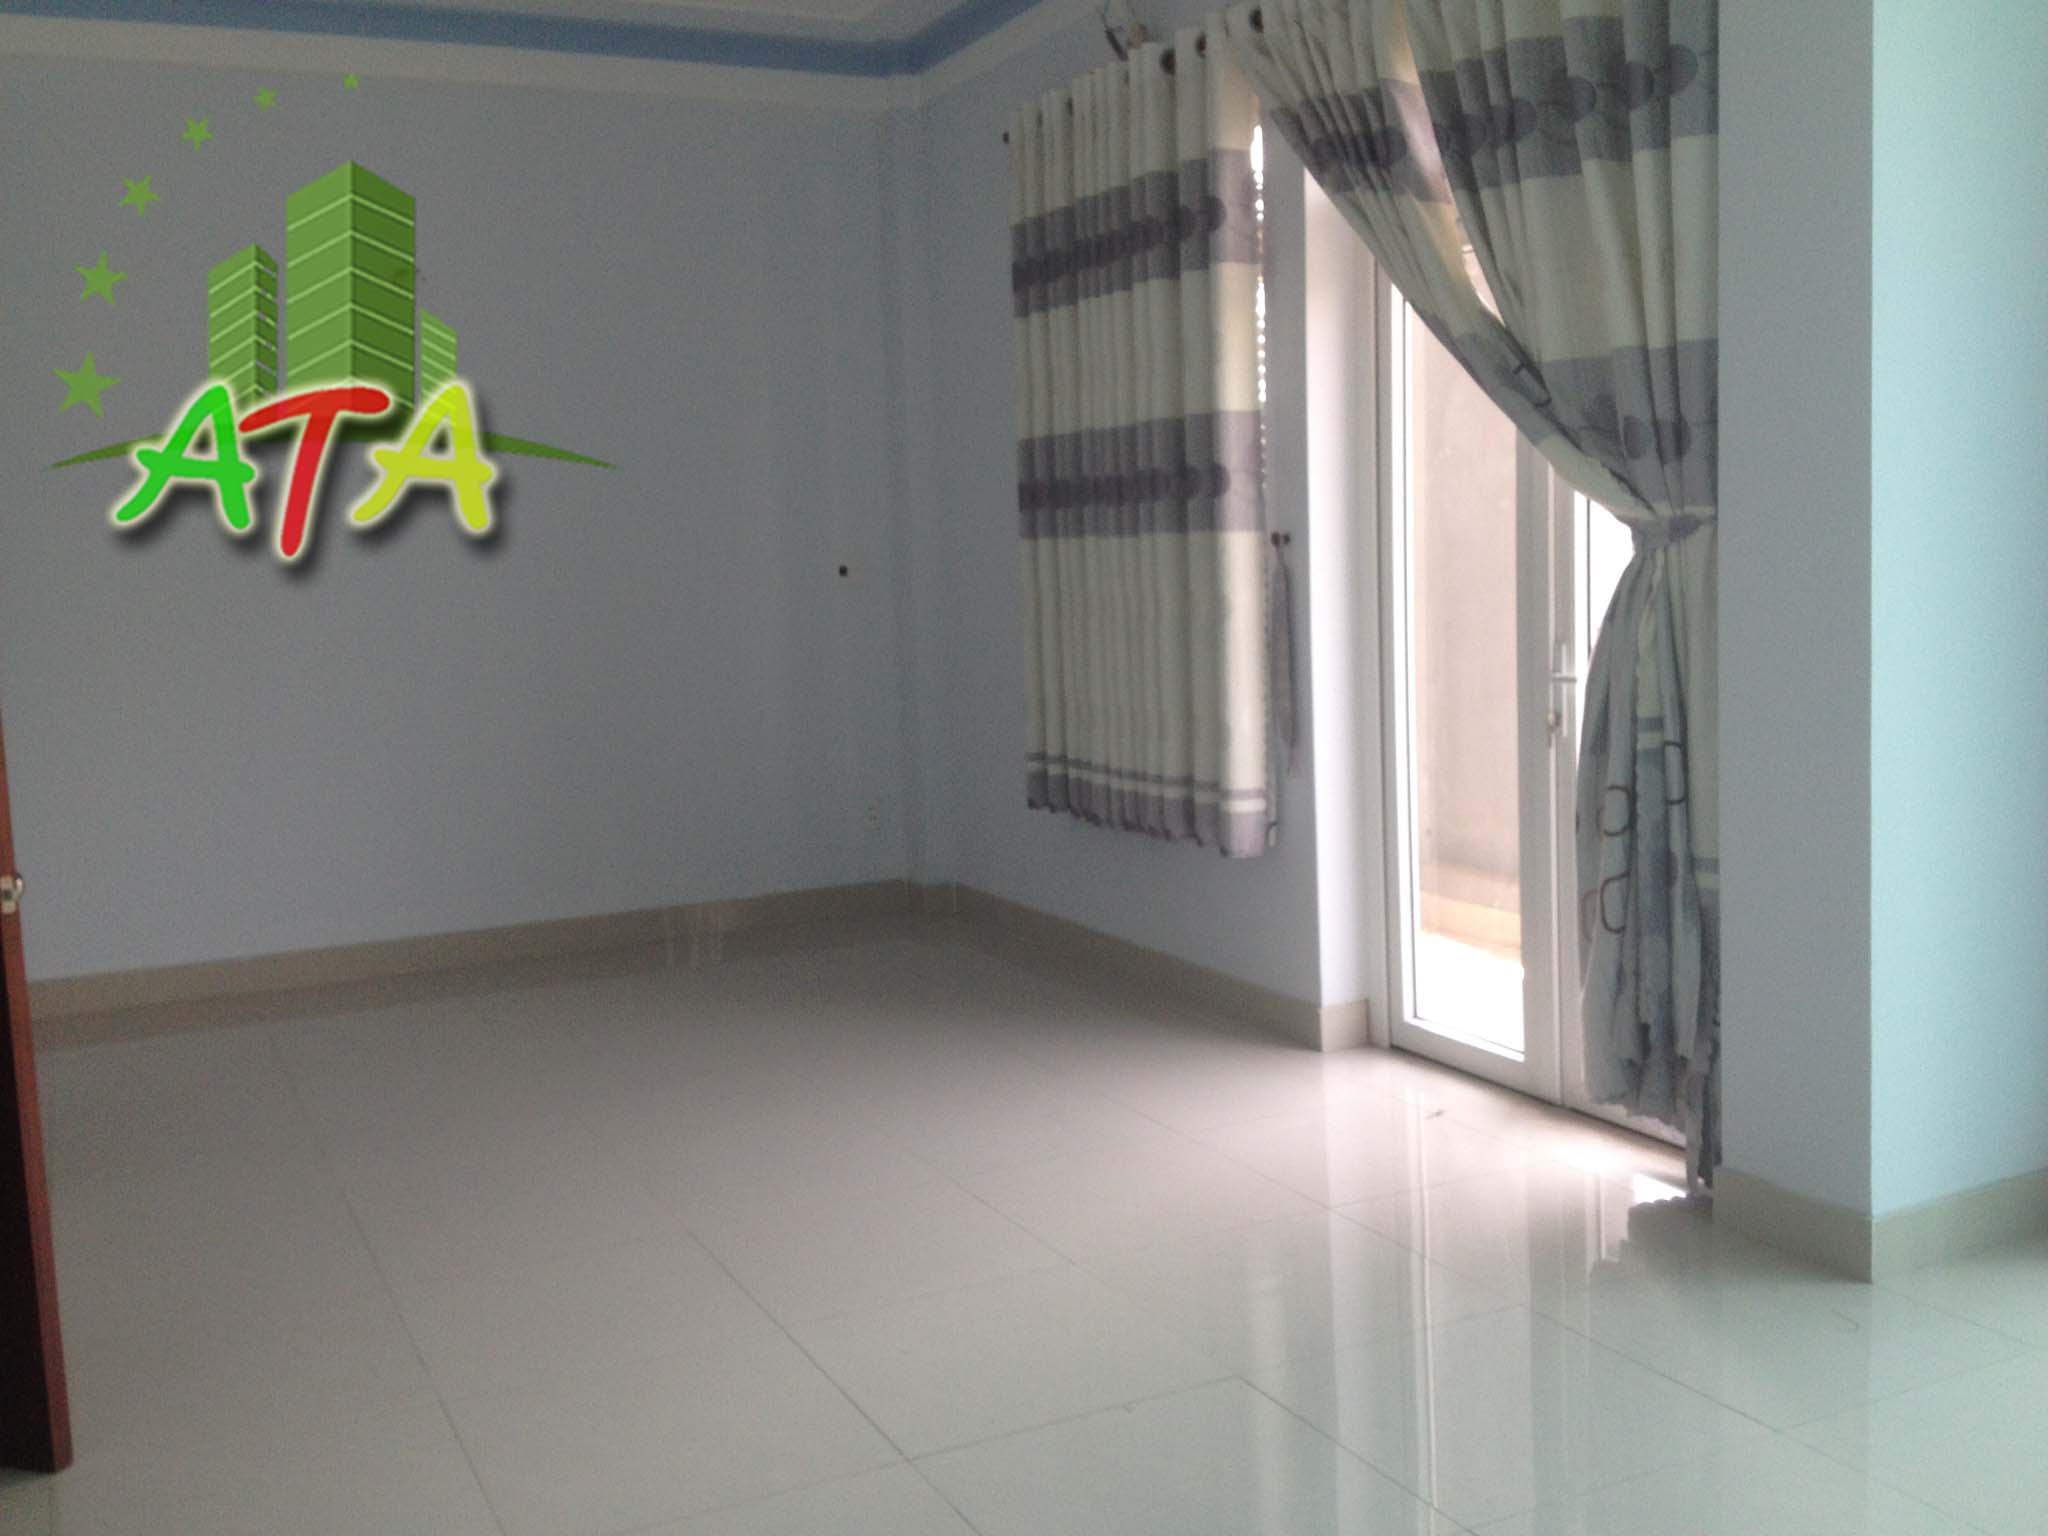 văn phòng cho thuê quận Tân Bình - đường Bạch Đằng 40 m2